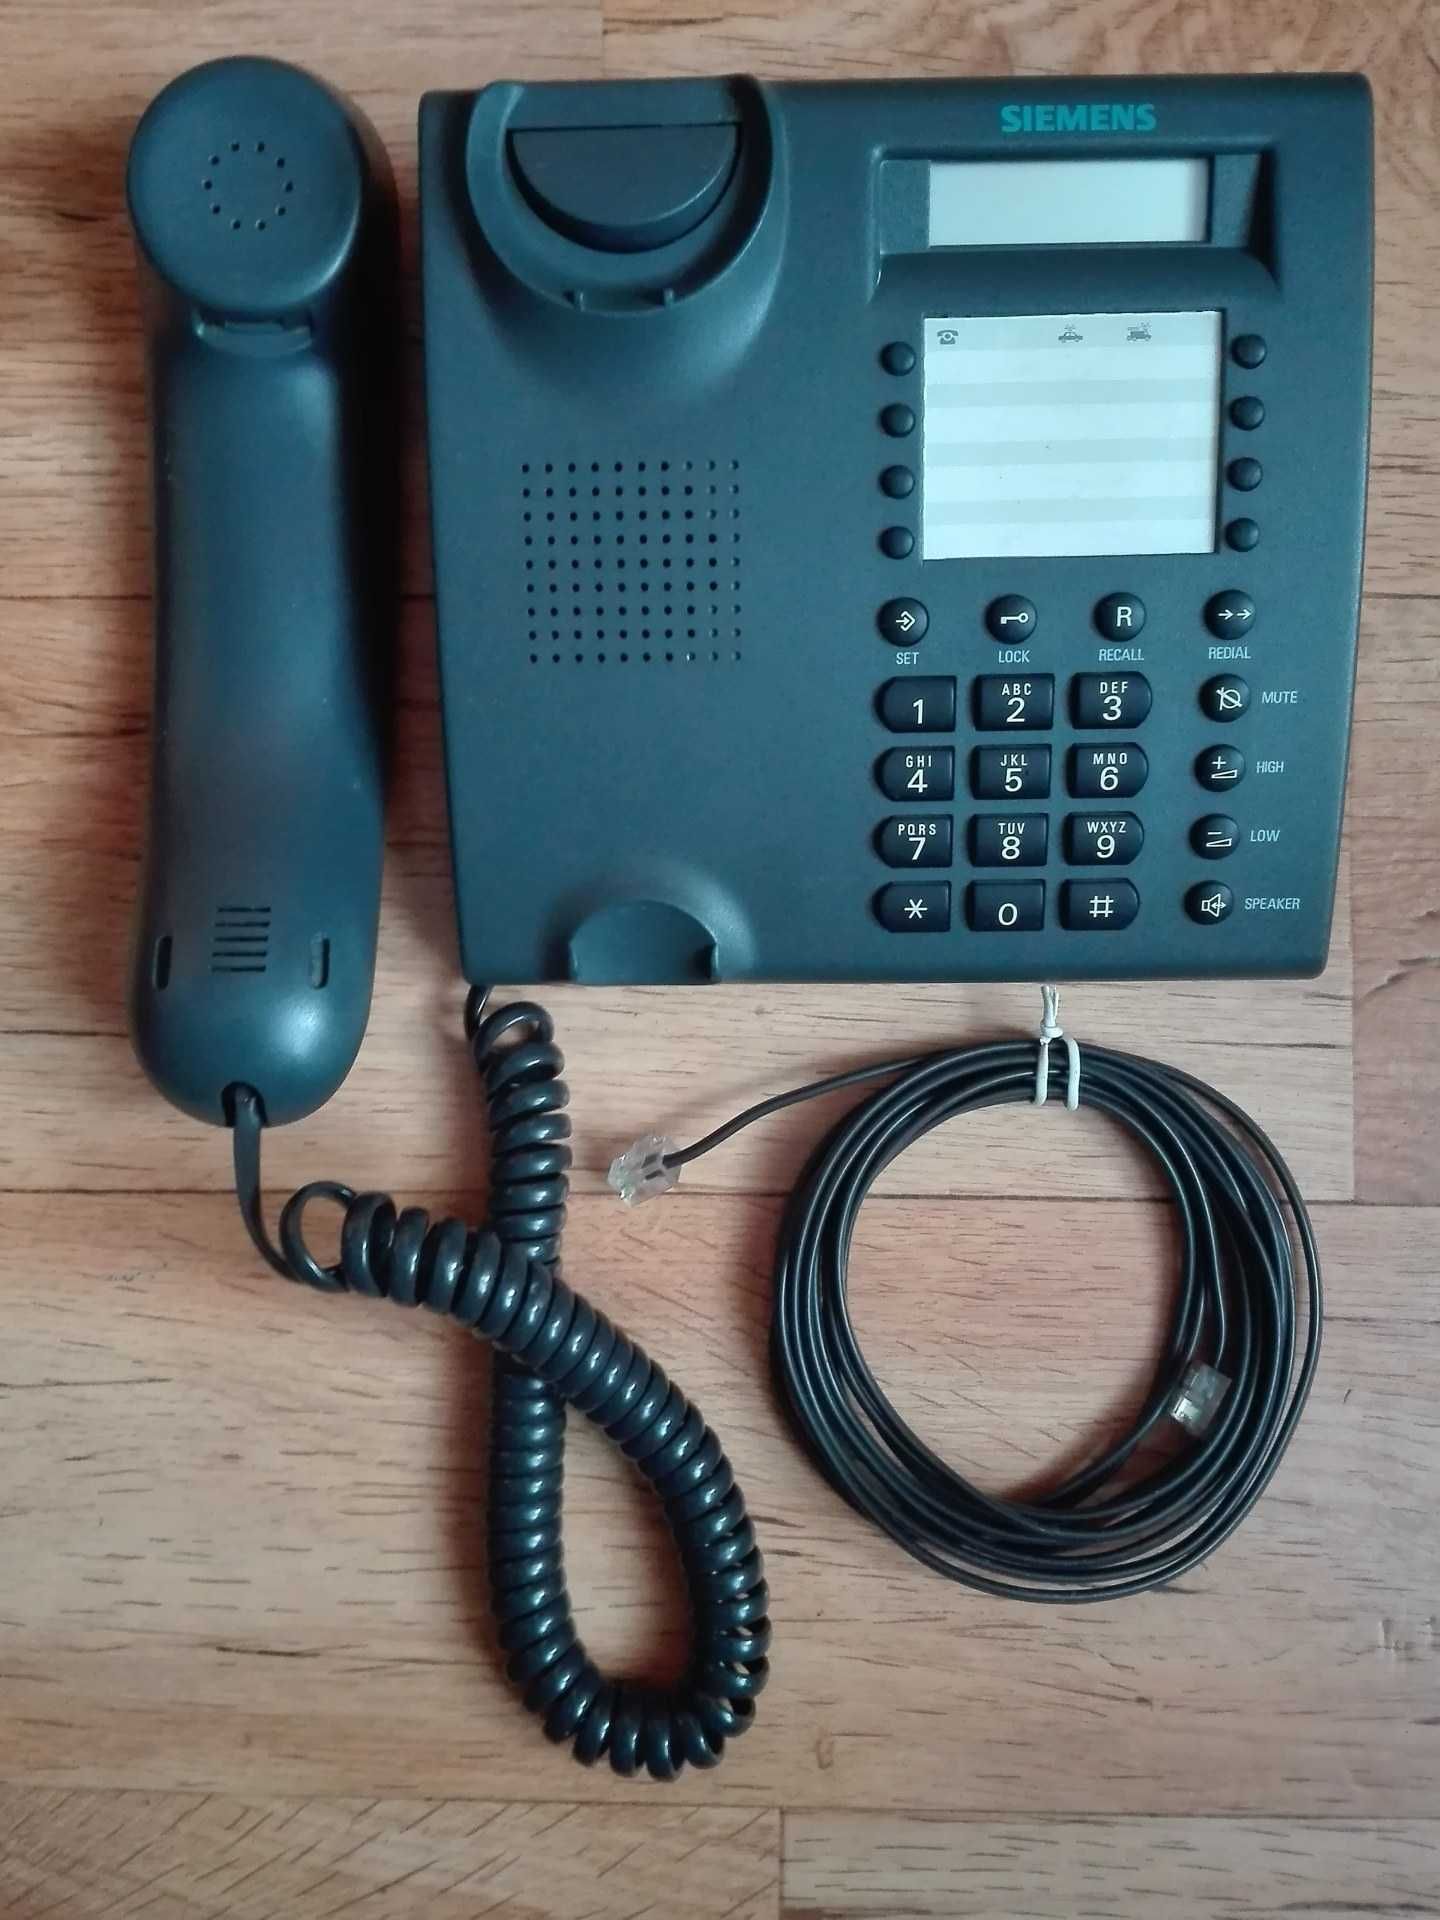 SIEMENS Euroset 815 telefon przewodowy.